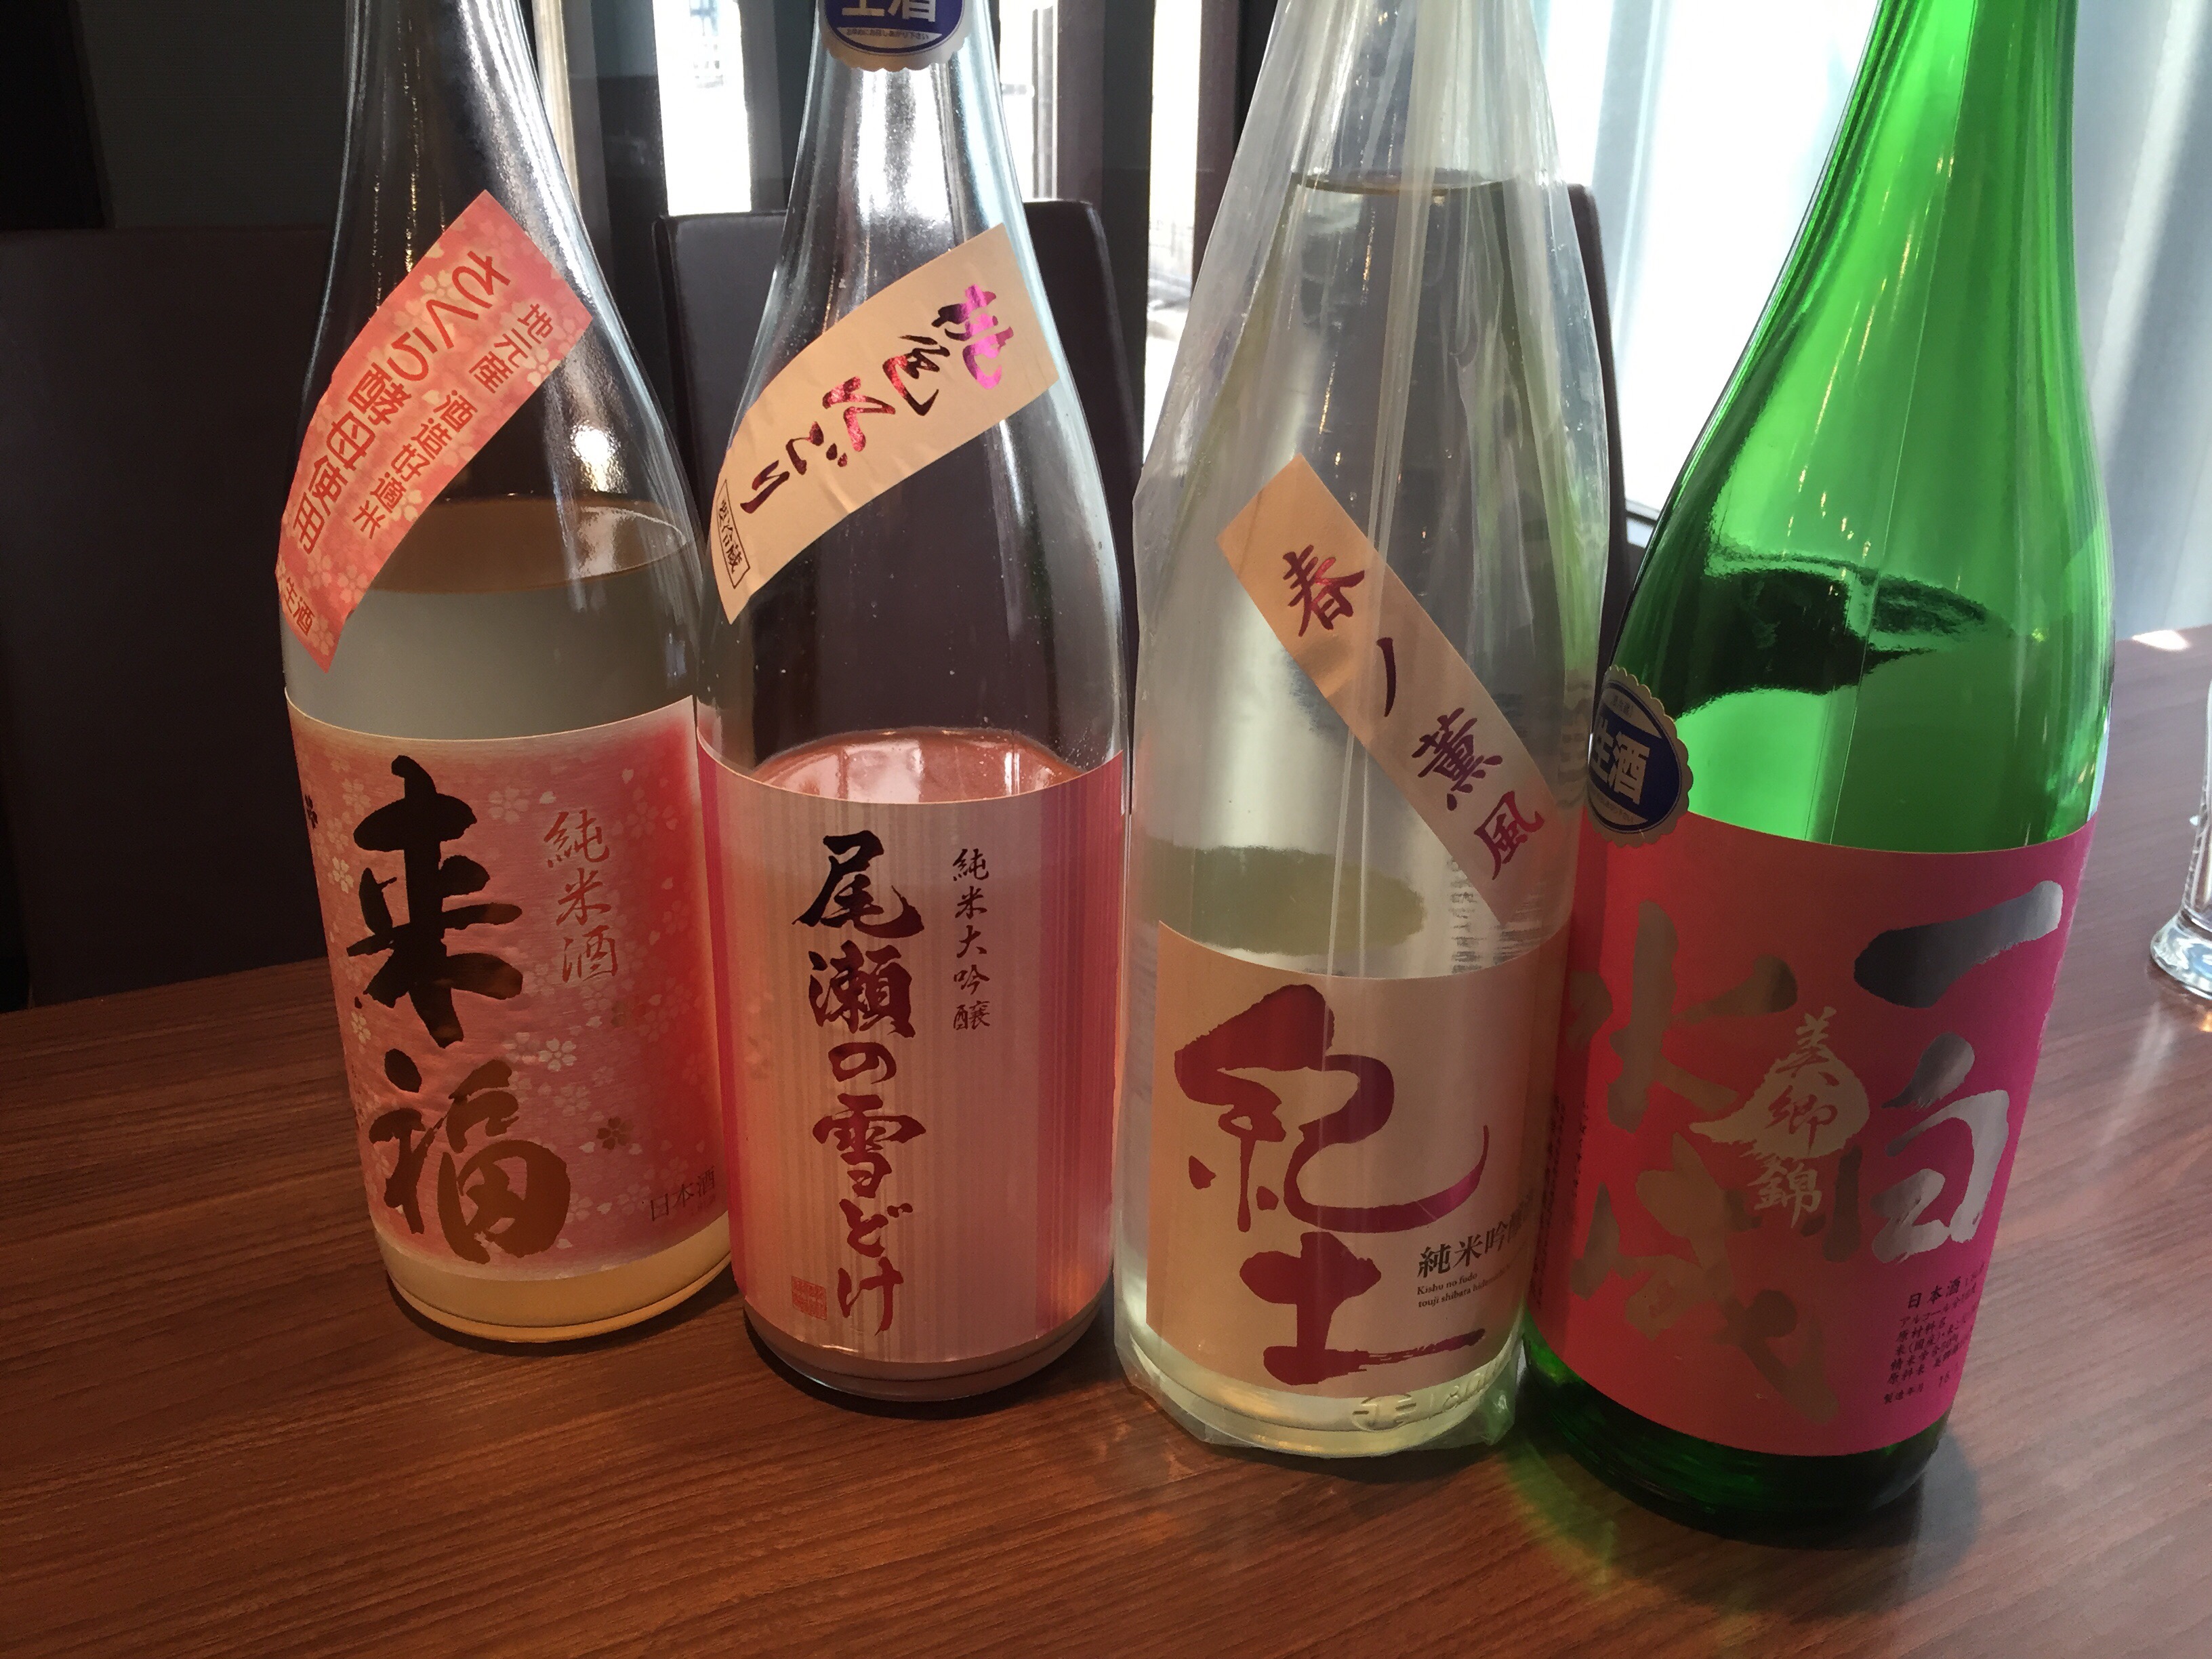 桜のイメージの日本酒